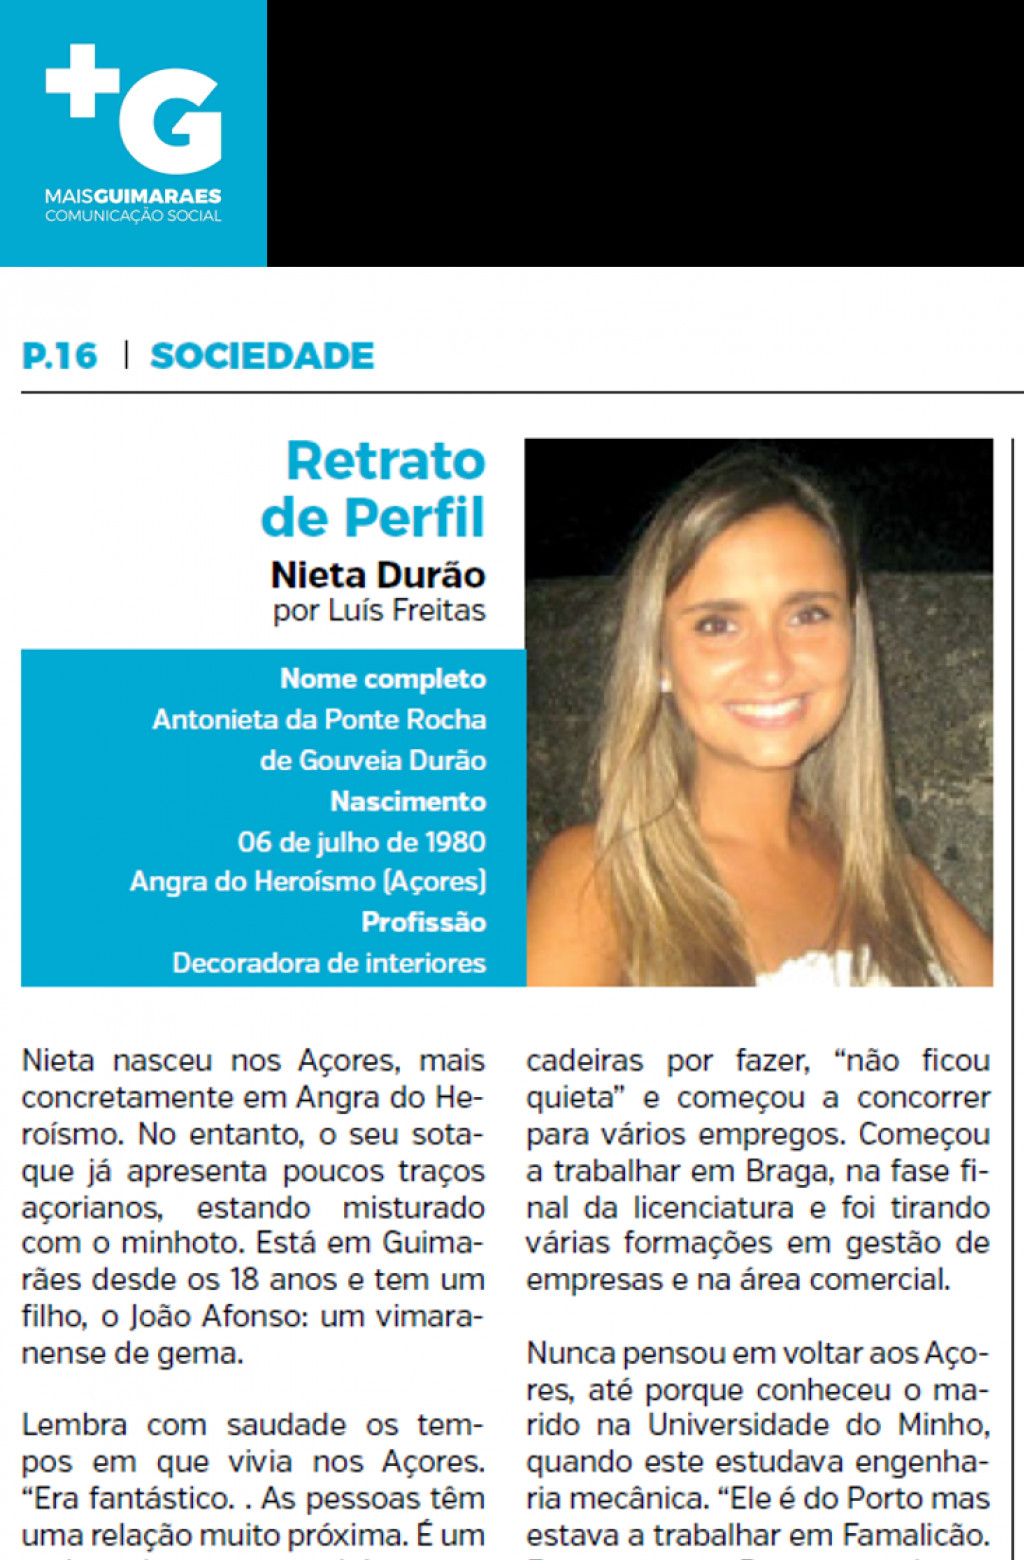 Mais Guimarães Magazine about Nieta